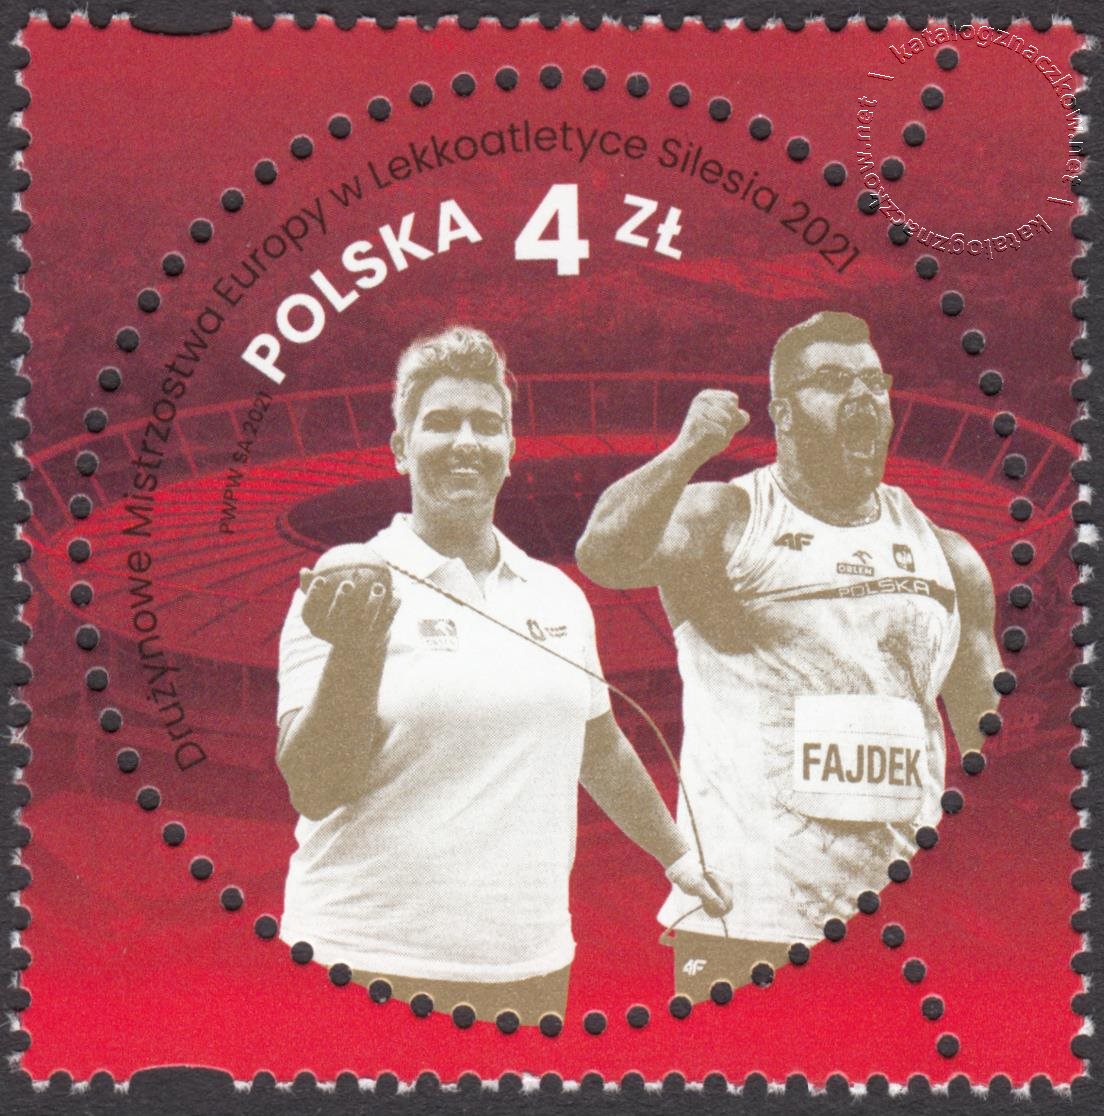 Drużynowe Mistrzostwa Europy w Lekkoatletyce Silesia 2021 znaczek nr 5154